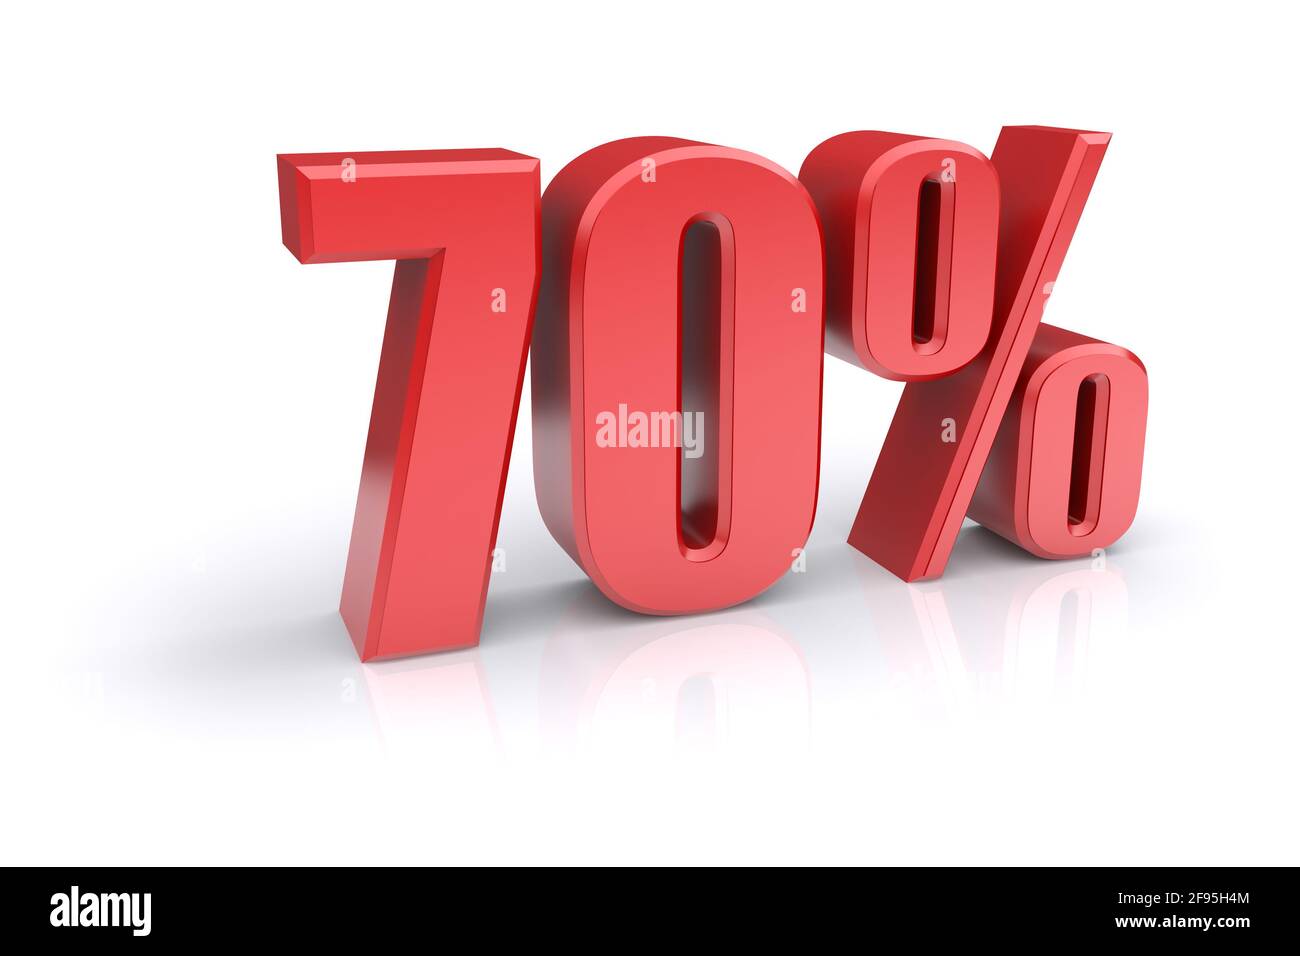 Icona rossa del tasso percentuale del 70% su sfondo bianco. immagine 3d rappresentata Foto Stock